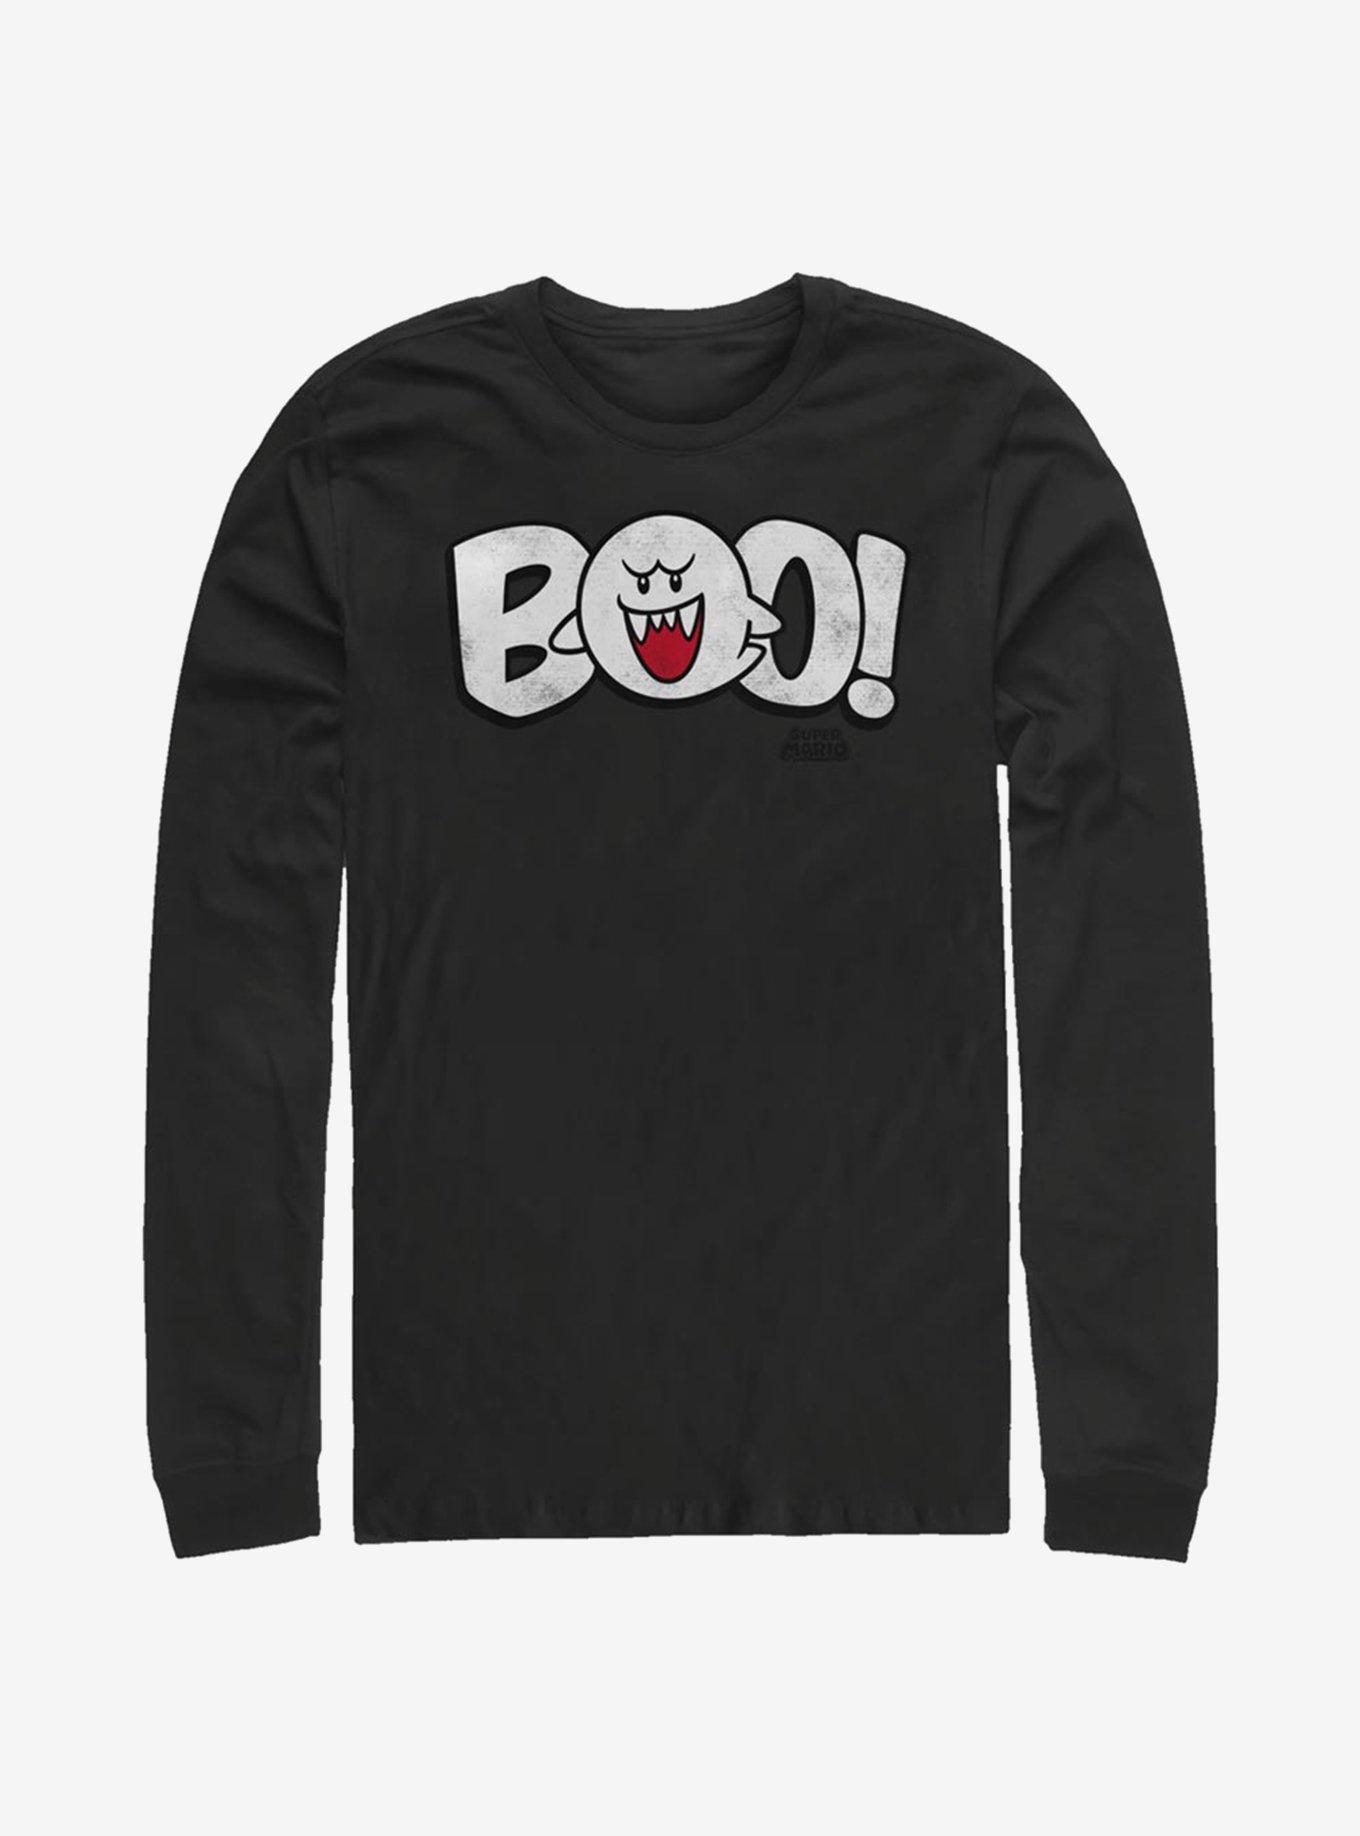 Super Mario Boo! Long-Sleeve T-Shirt, BLACK, hi-res